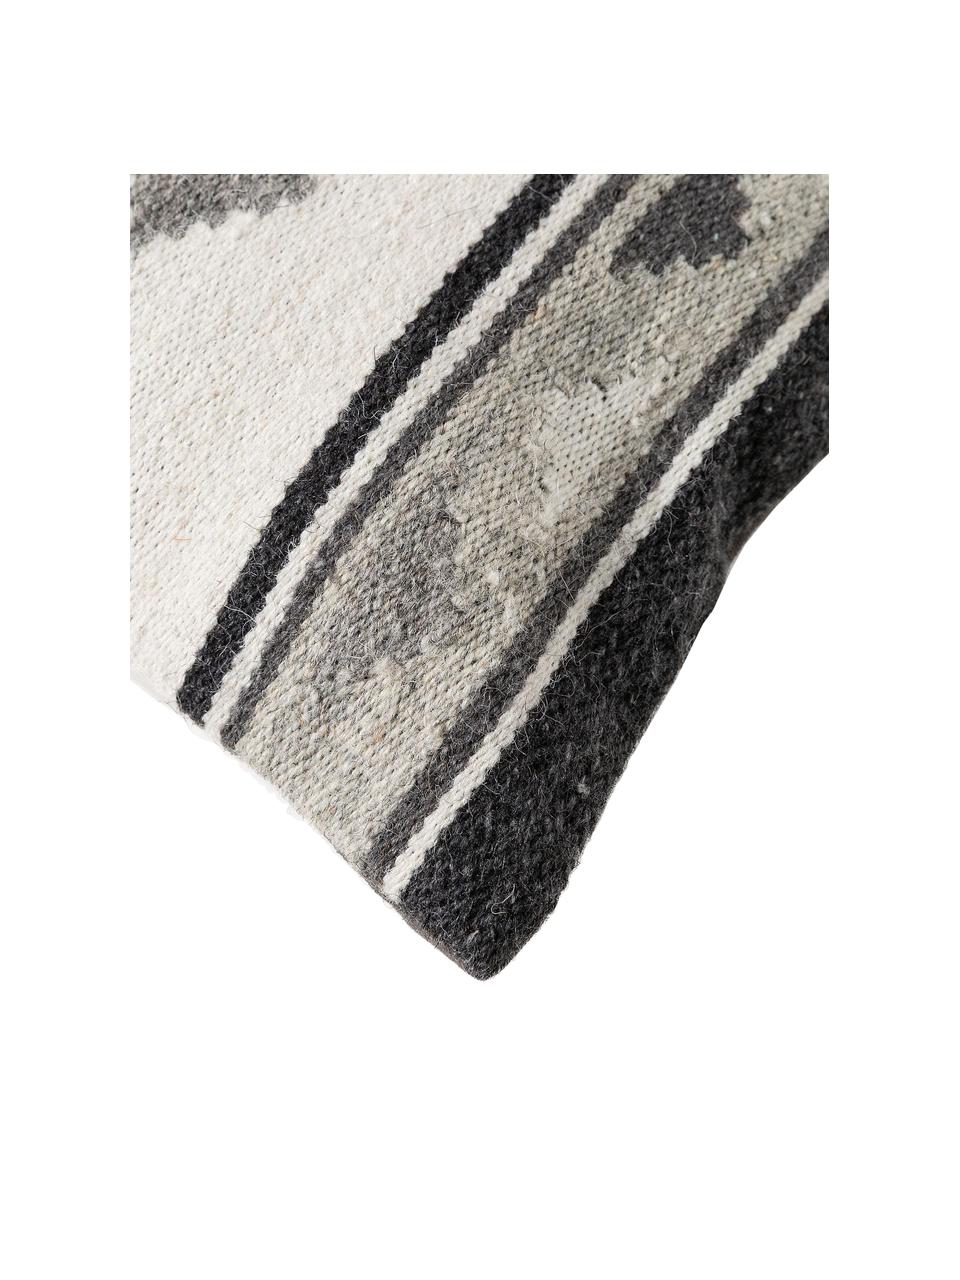 Kussenhoes Dilan met ethnopatroon in donkergrijs/grijs van wol, 80% wol, 20% katoen, Grijstinten, 45 x 45 cm